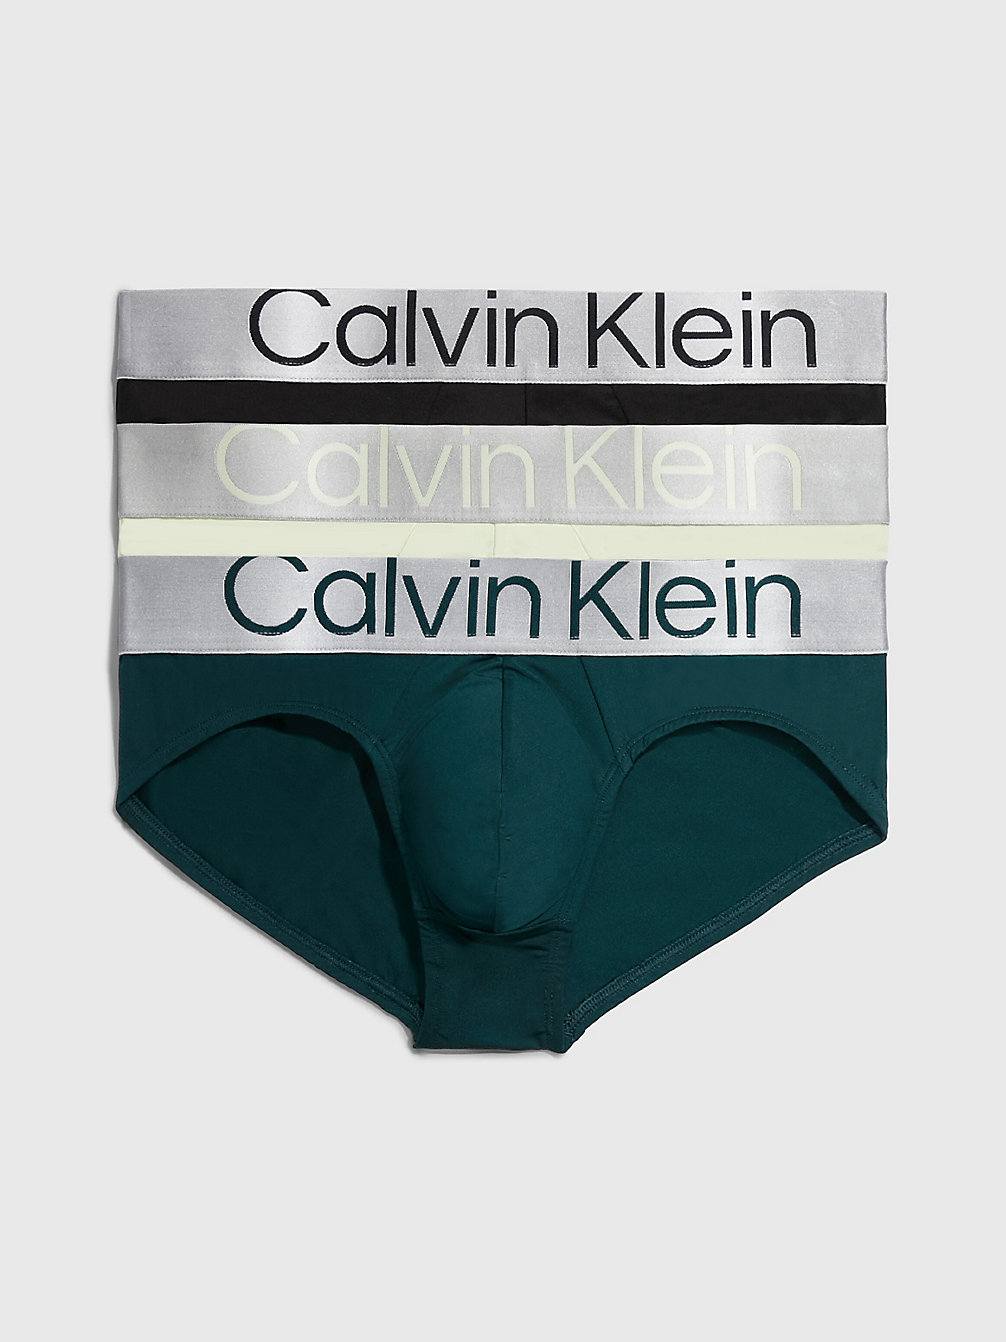 BLACK, PONDEROSA PINE, SPRING ONION 3 Pack Briefs - Steel Micro undefined men Calvin Klein